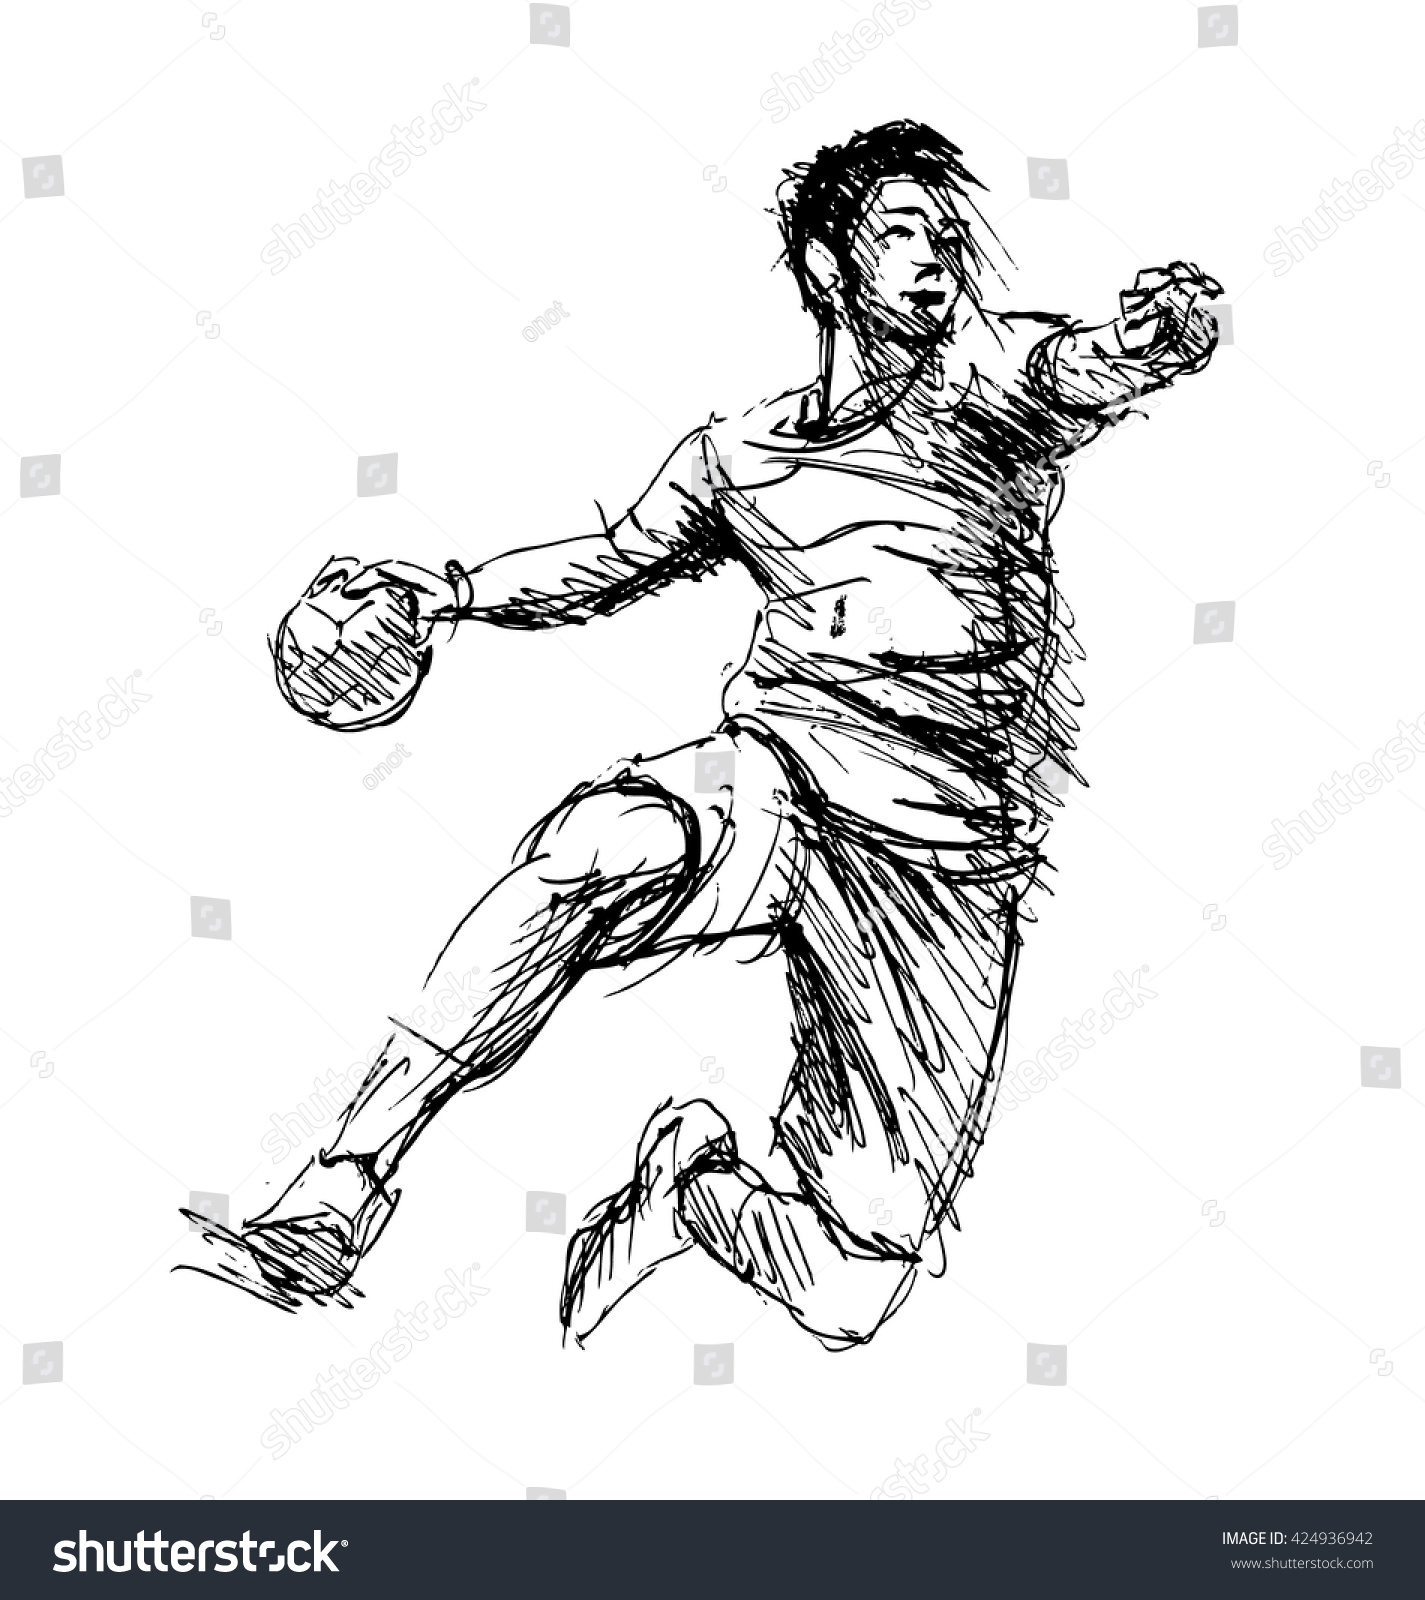 Hand Sketch Handball Players Vector Illustration Stock Vector 424936942 ...